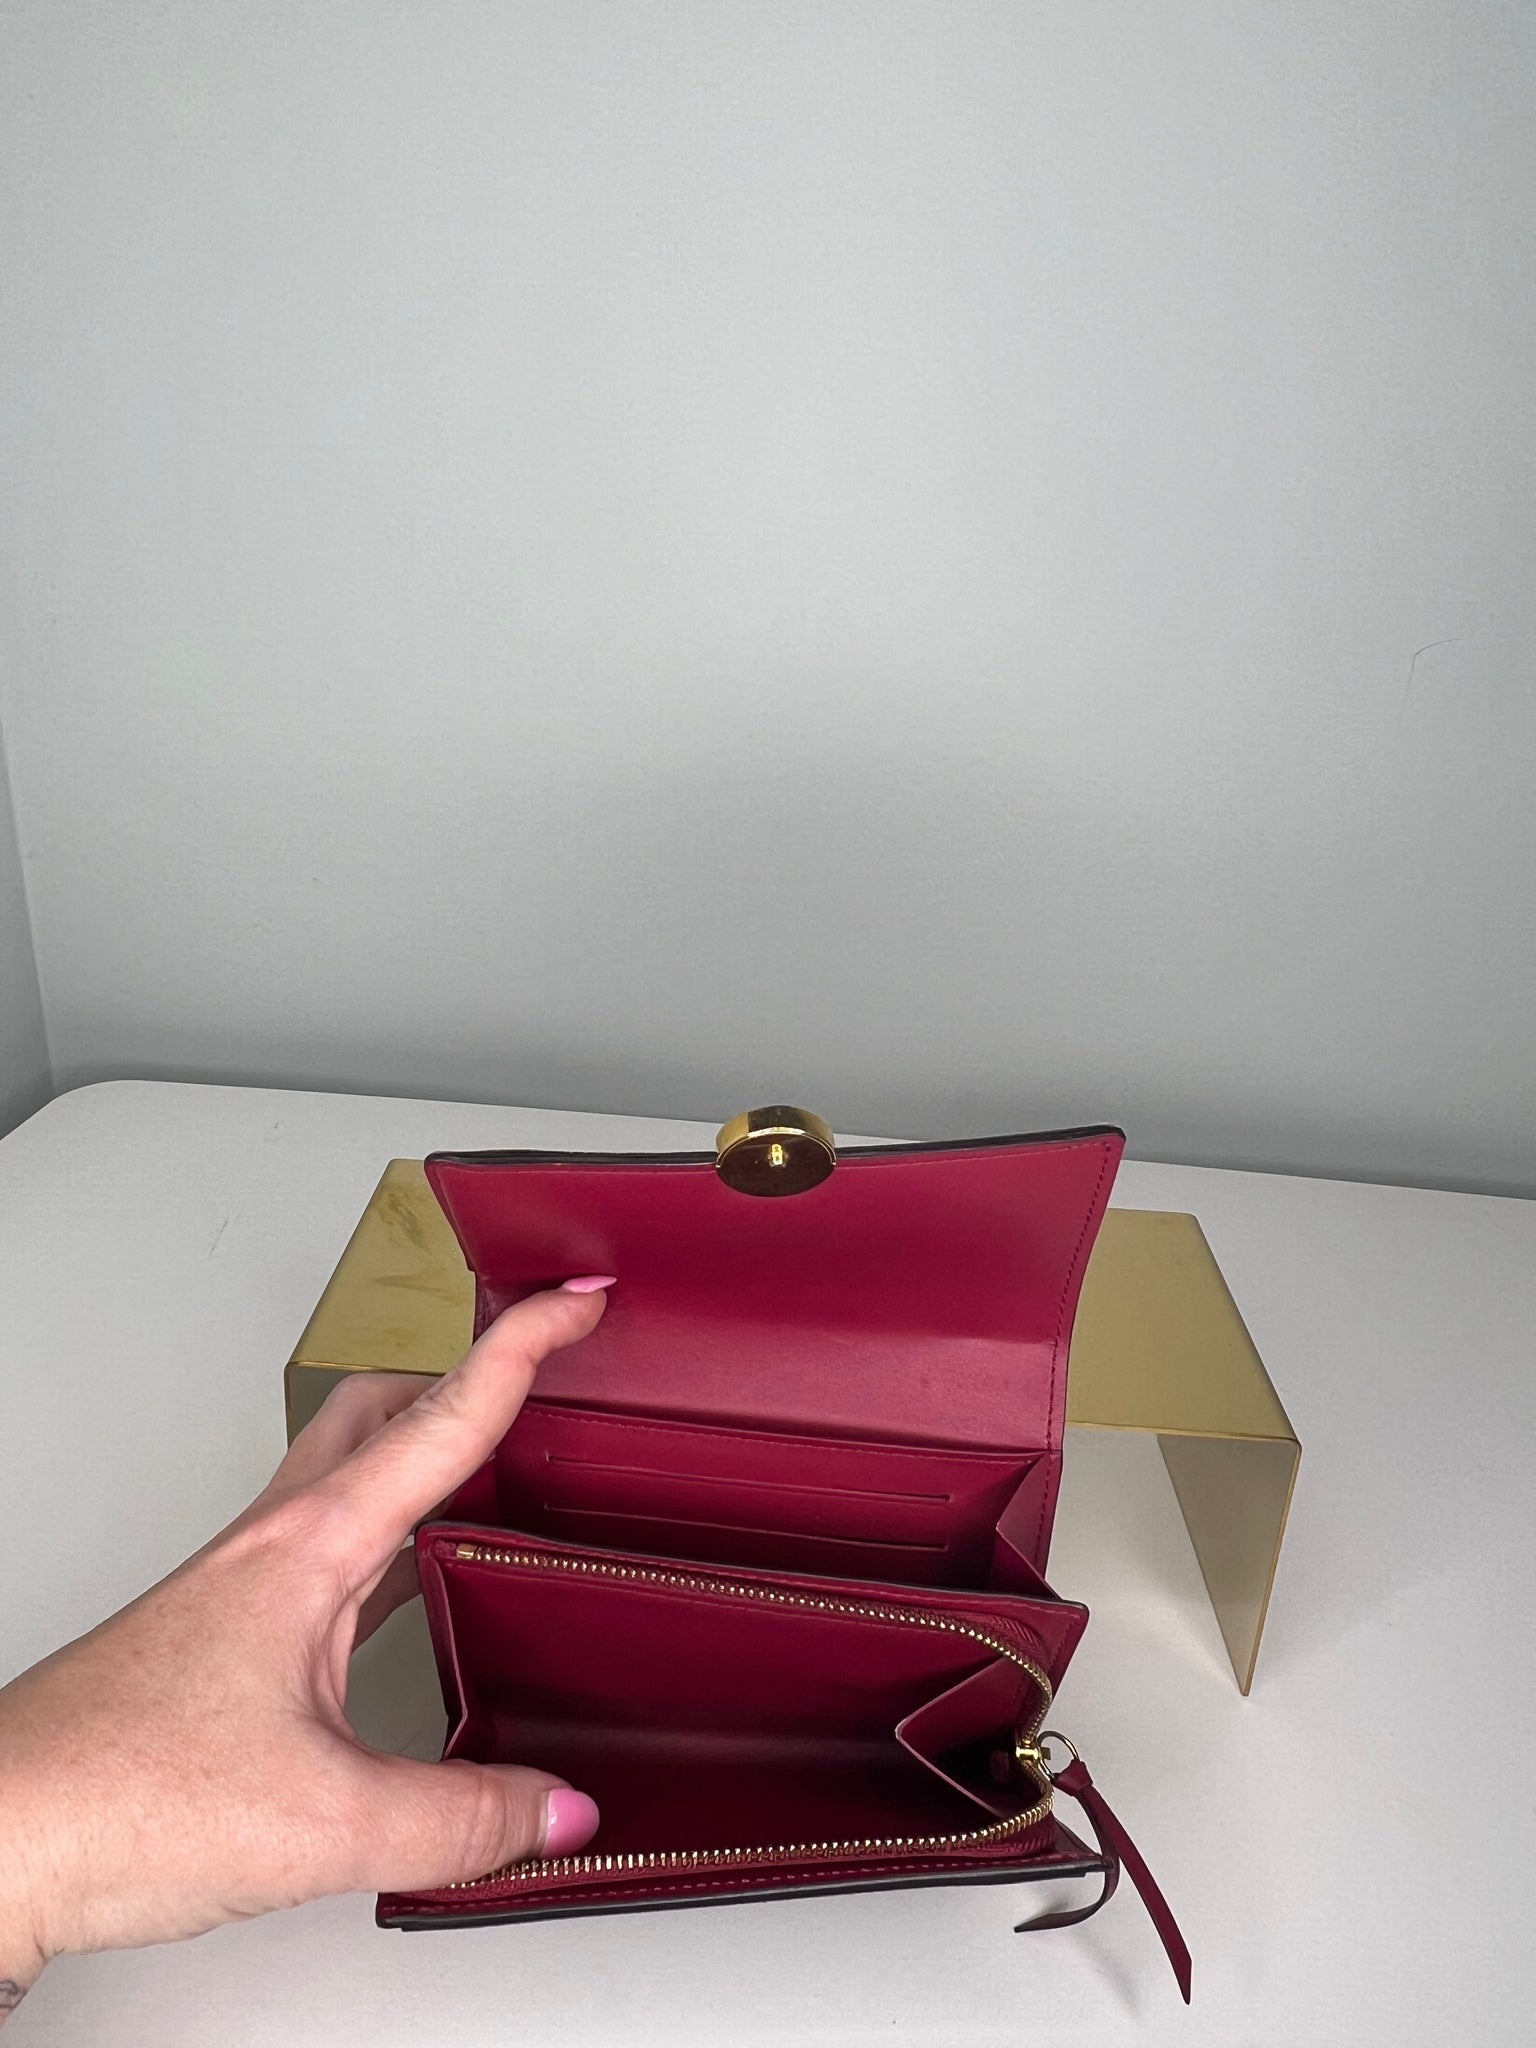 Louis Vuitton Monogram Flore Compact Wallet